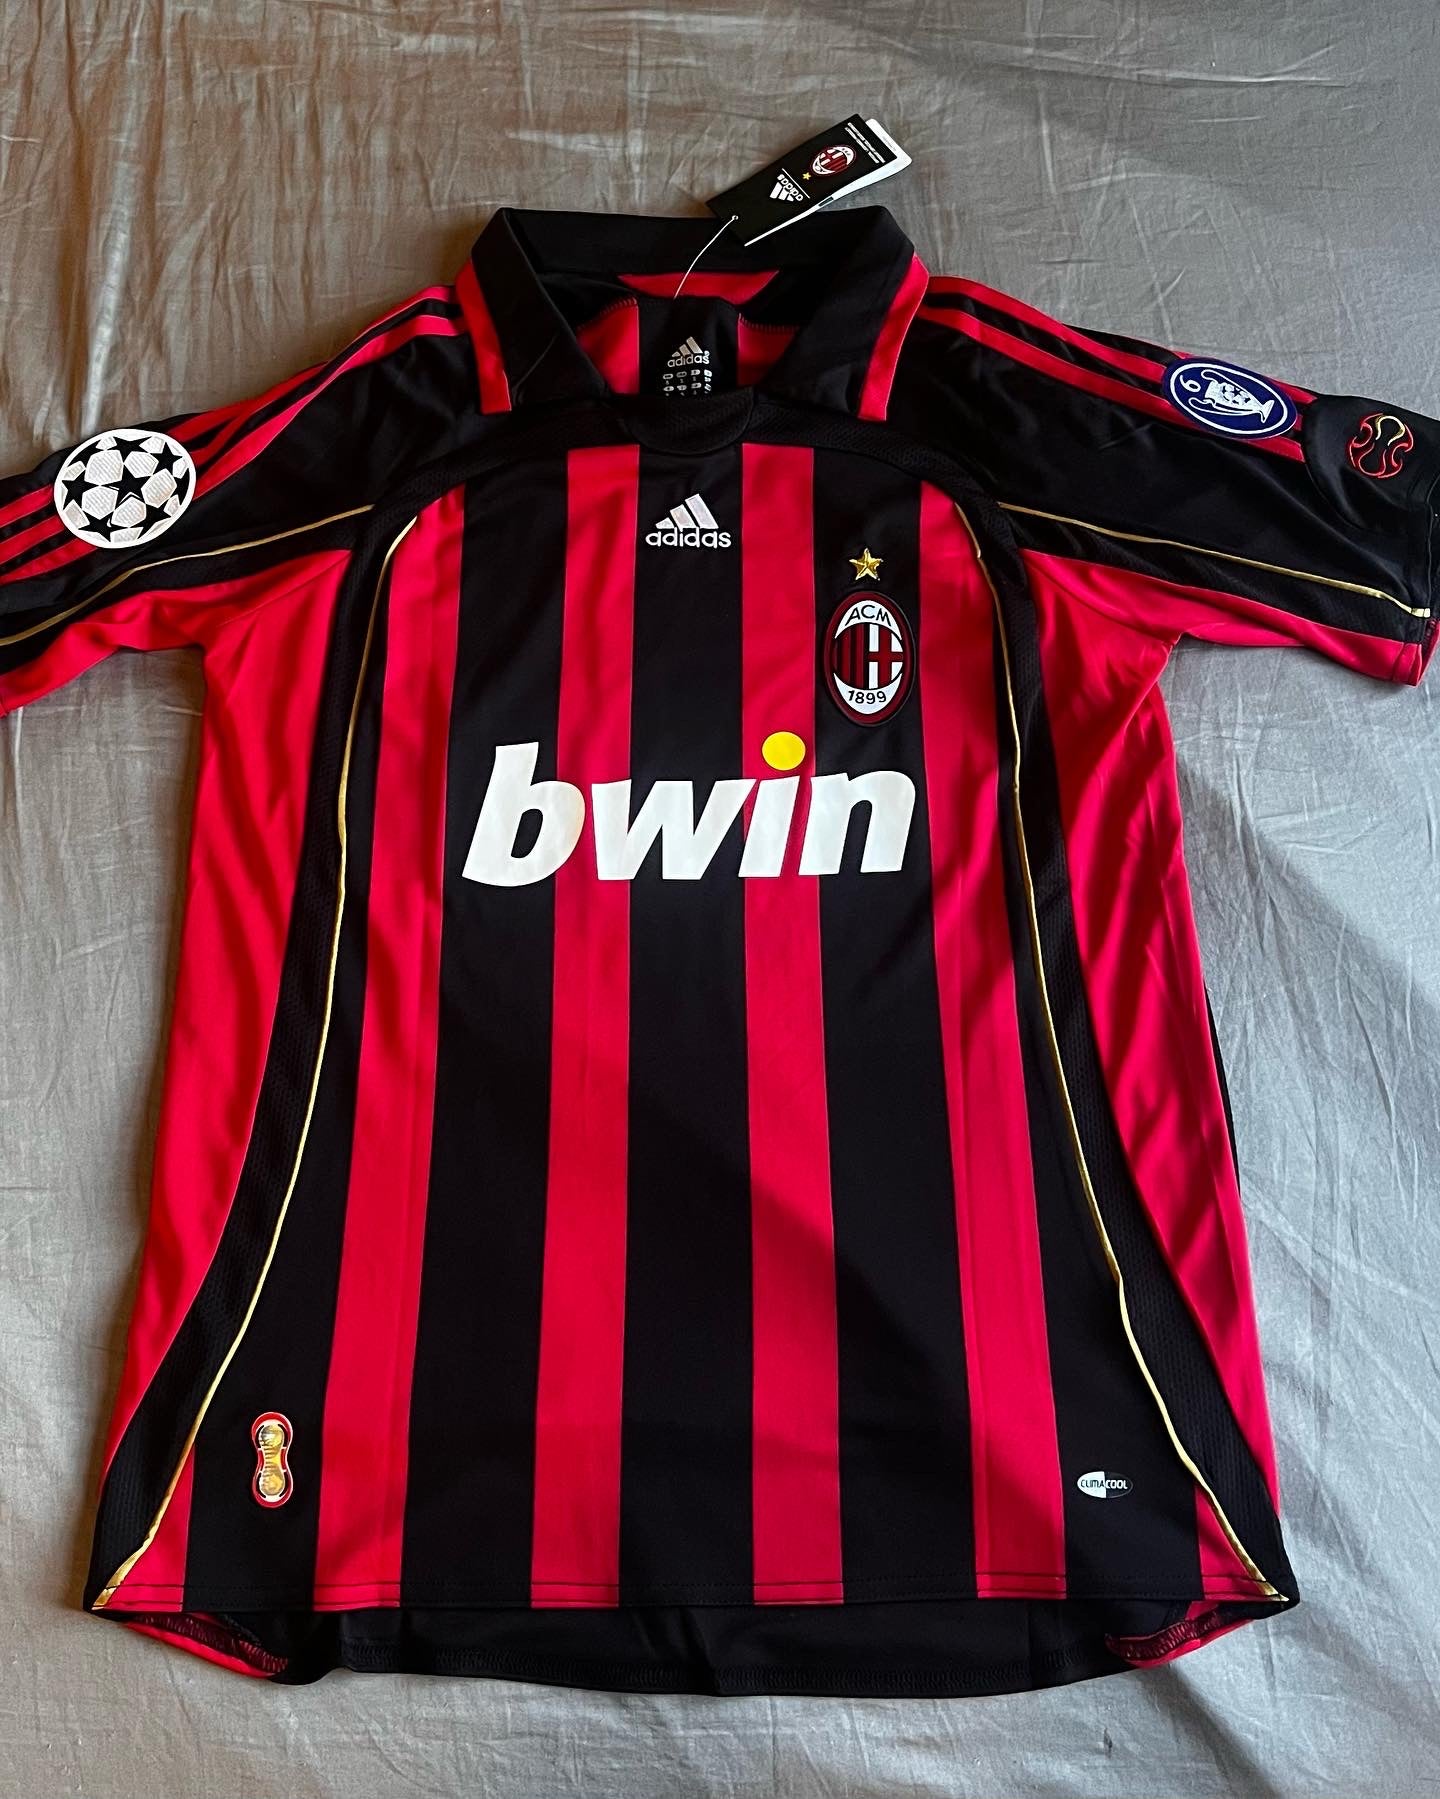 AC Milan 06/07 Home jersey